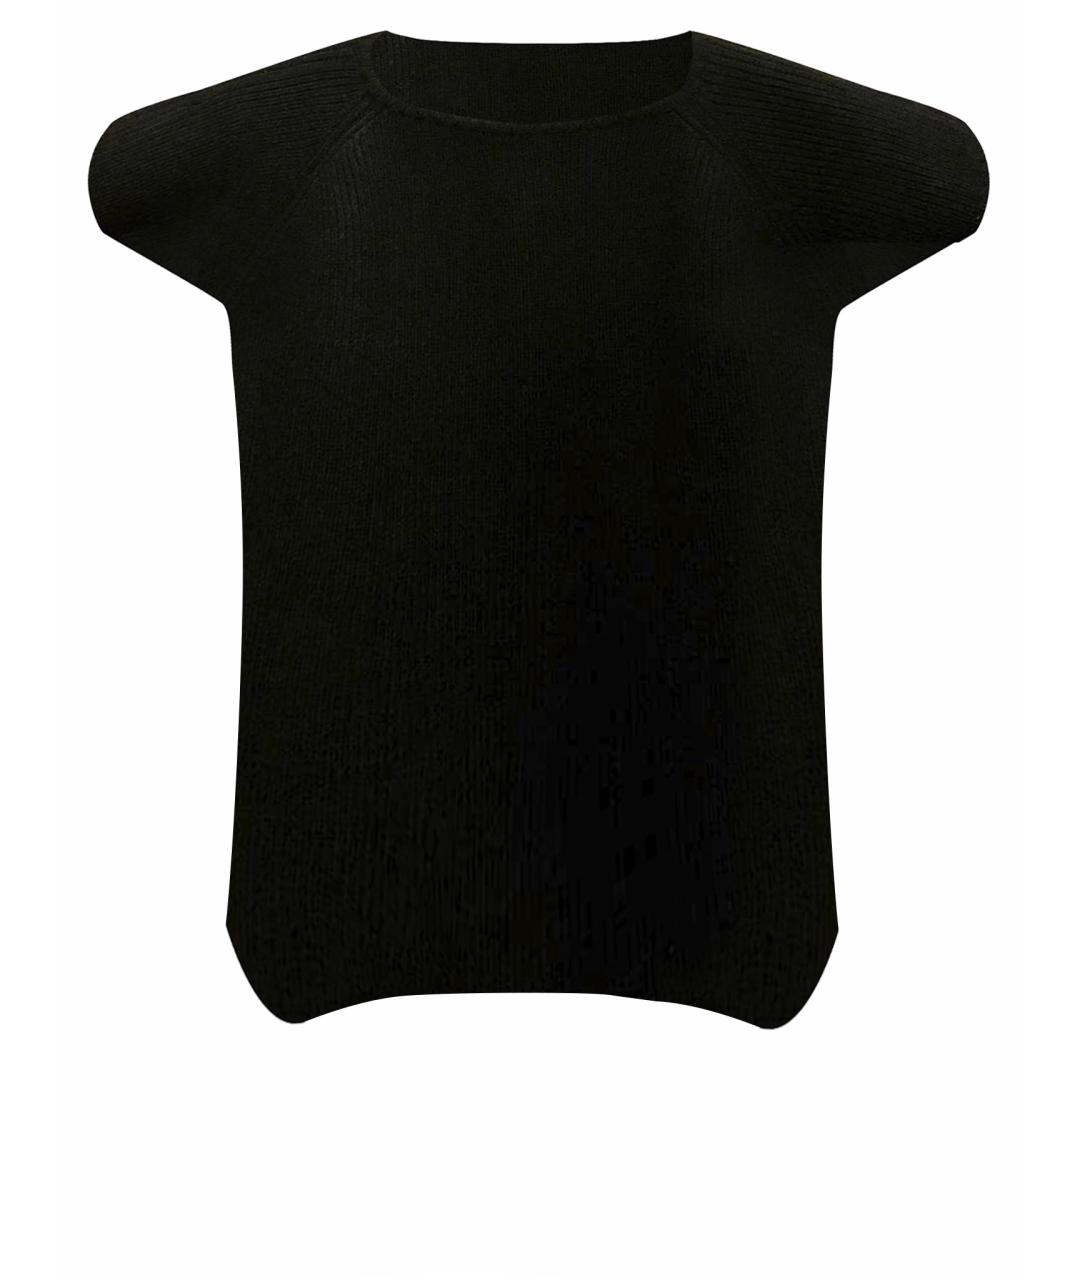 GIANFRANCO FERRE Черный шерстяной джемпер / свитер, фото 1